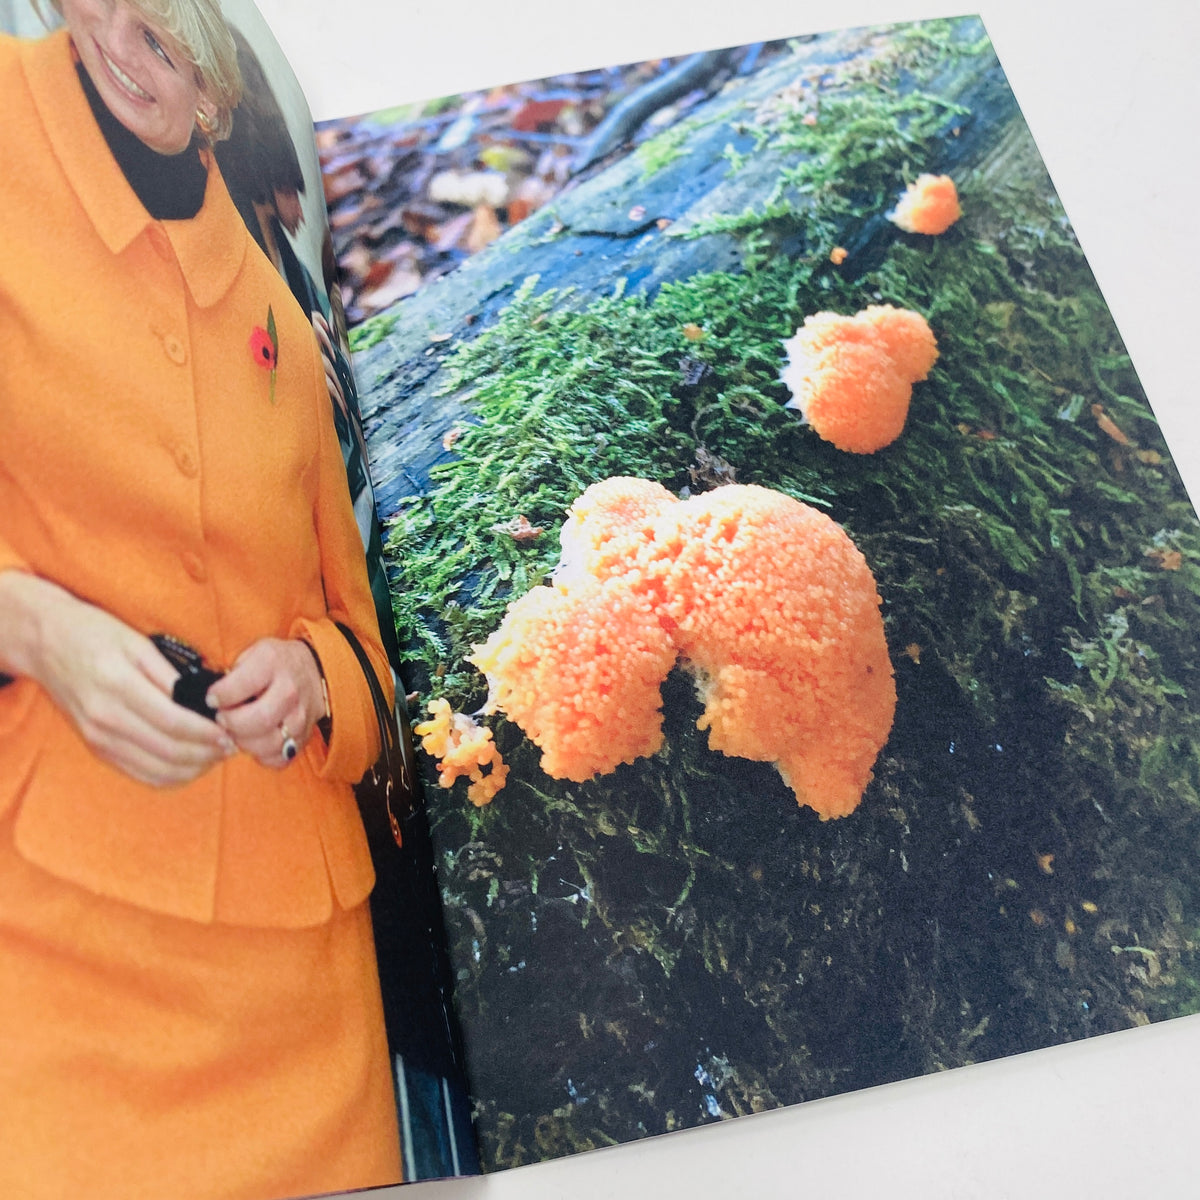 Princess Diana as Mushrooms #1